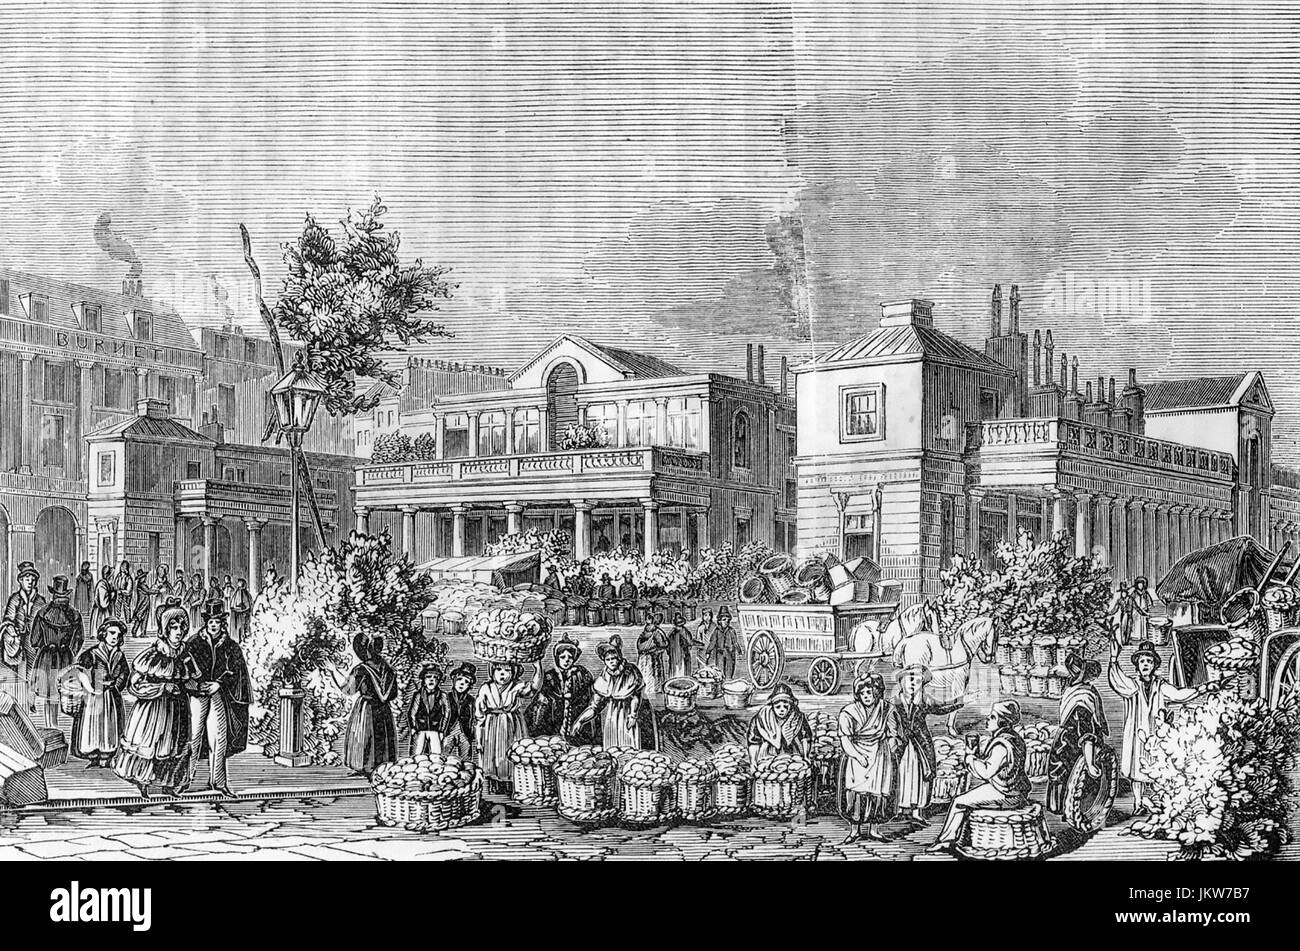 Marché couvert de Covent Garden, Londres, 1850 Banque D'Images